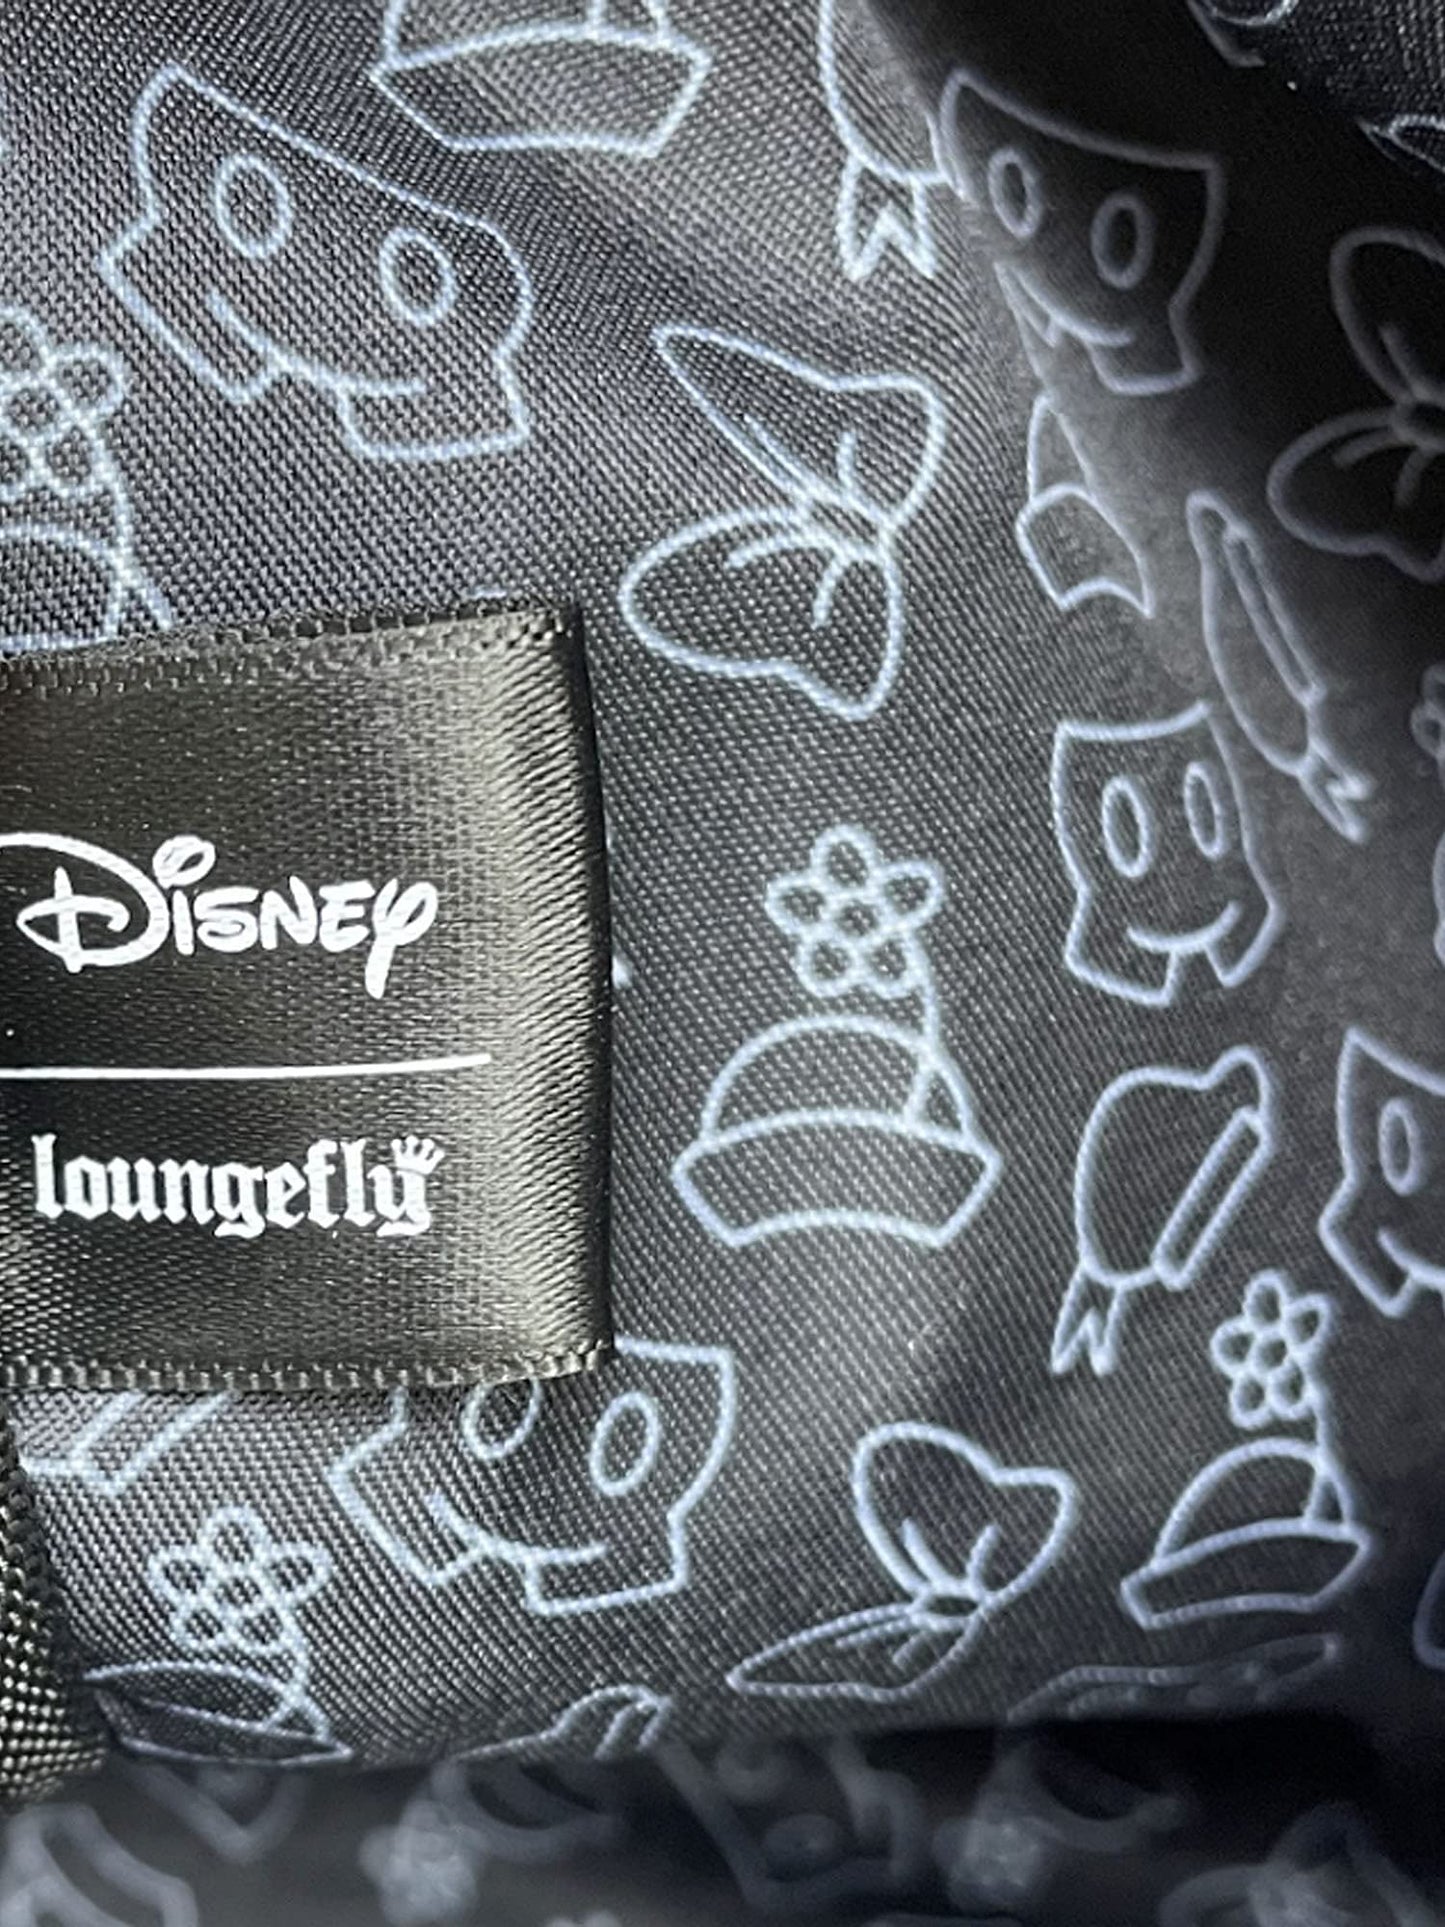 Loungefly Disney Mickey Minnie Mouse Donald Daisy Mini Backpack Handbag White